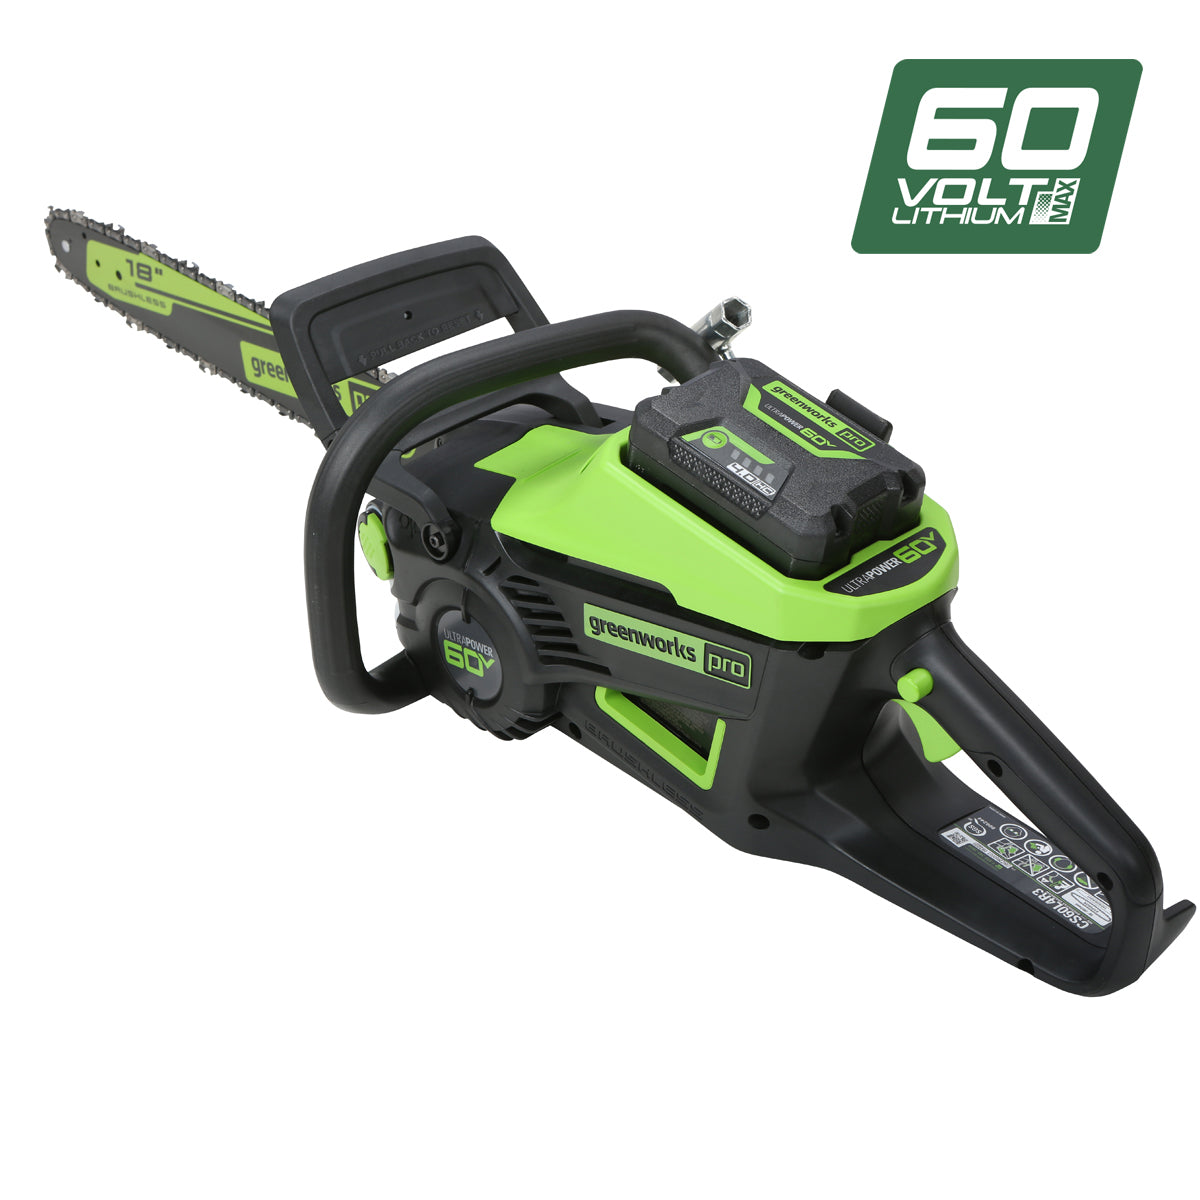 Greenworks 60V Pro Brushless Chainsaw (16")